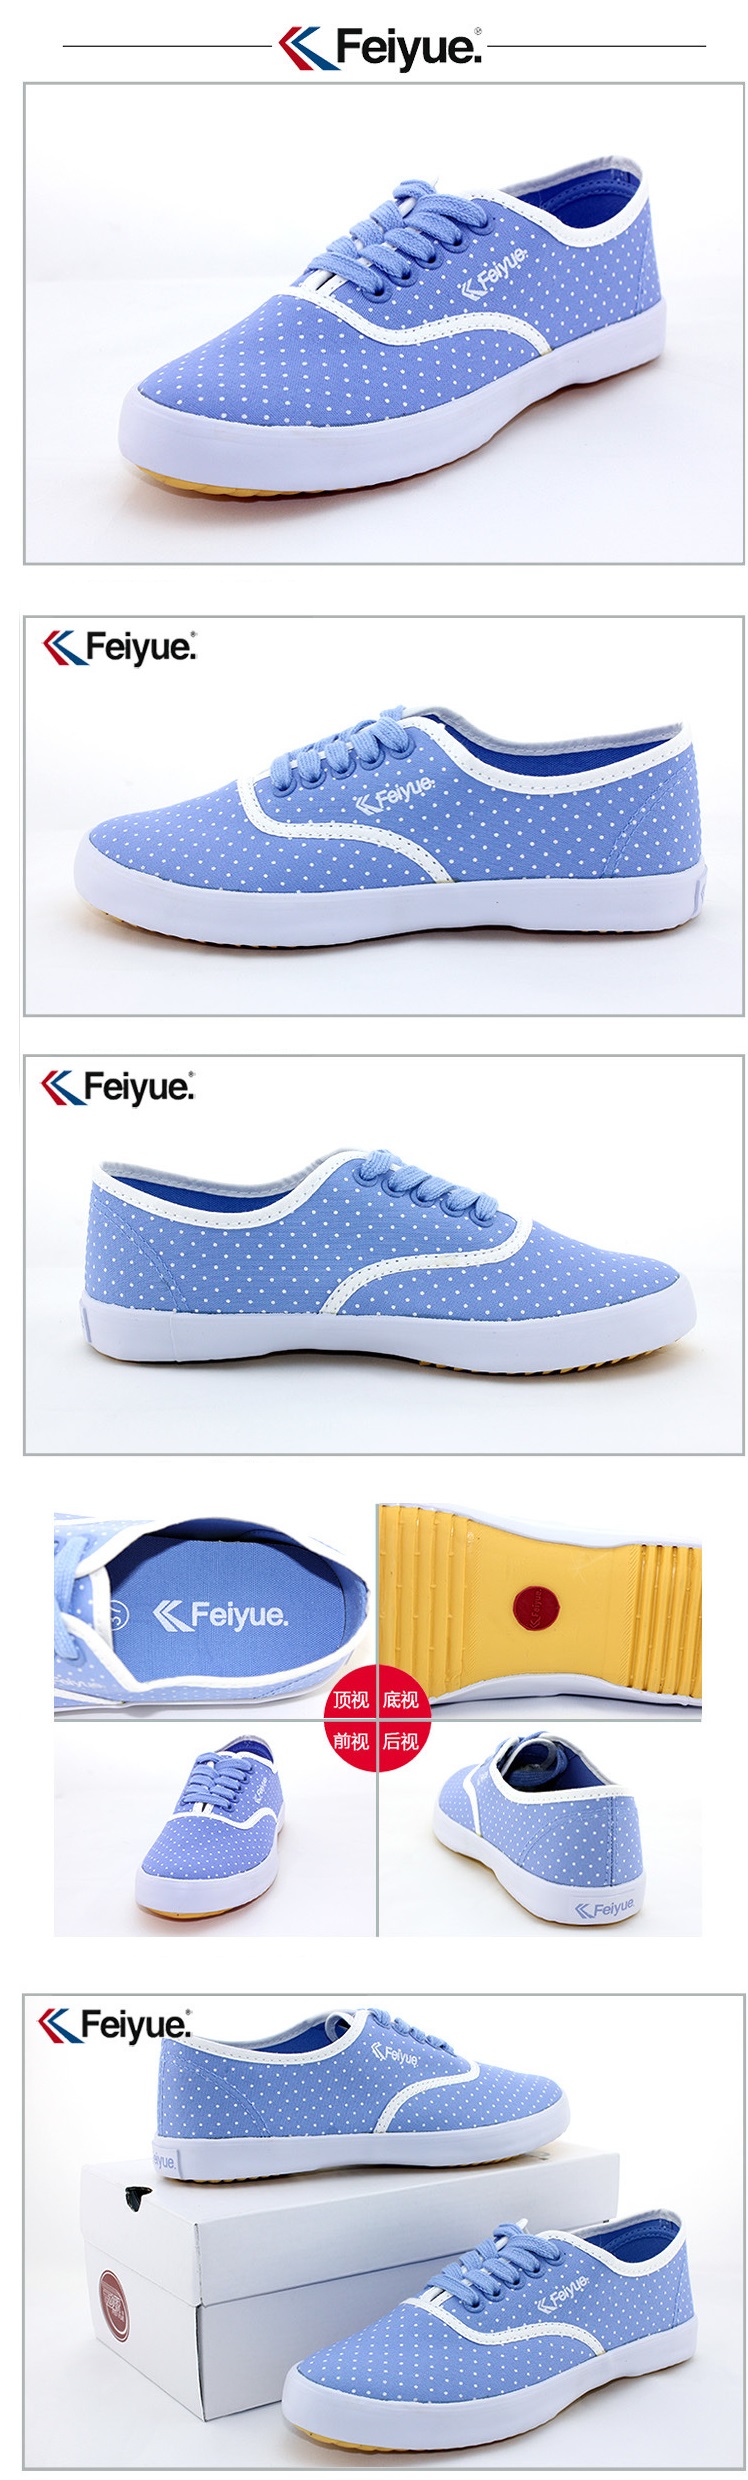 Feiyue plain sneaker Detail image